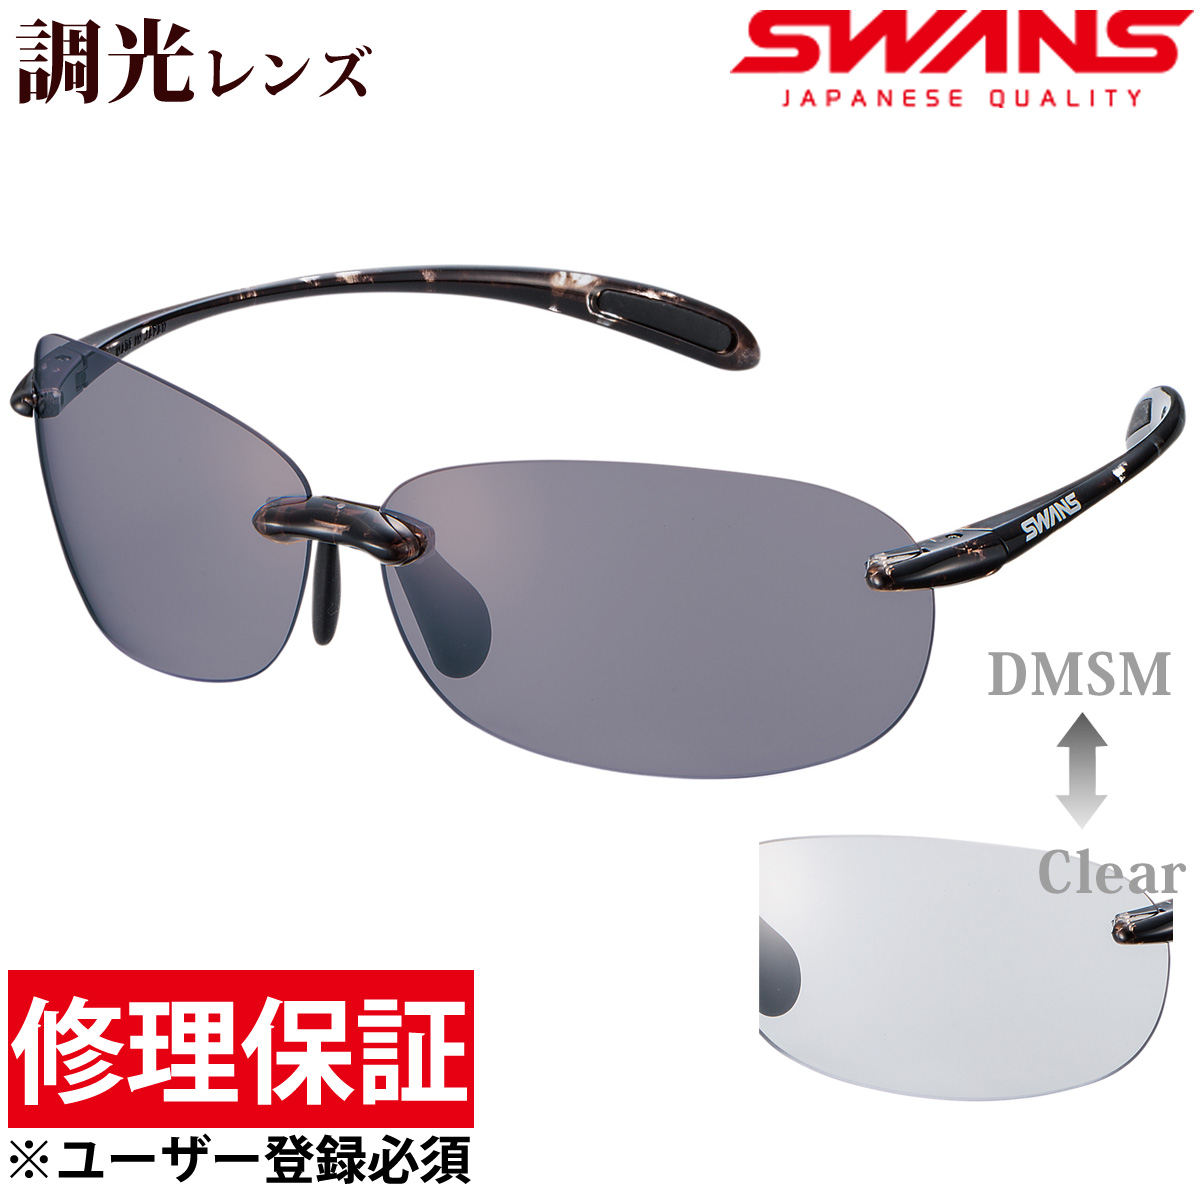 サングラス メンズ レディース 調光レンズ エアレスビーンズ UV カット SWANS スワンズ SWANS スワンズ